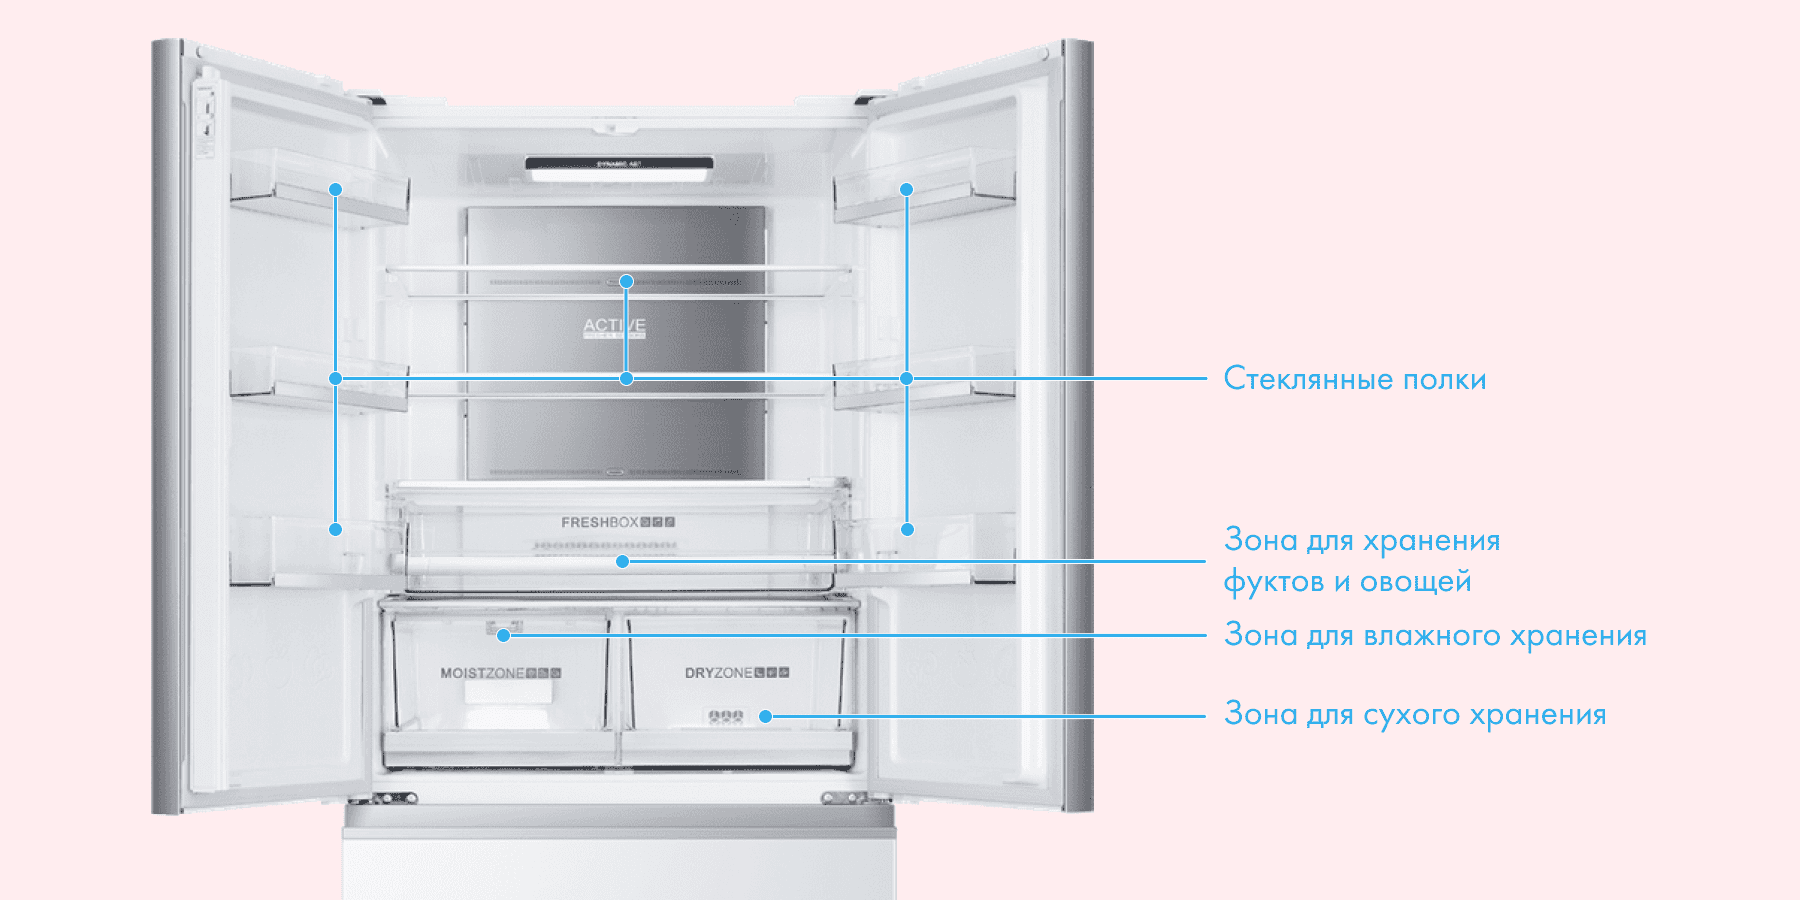 Расположение полок в холодильнике Хайер